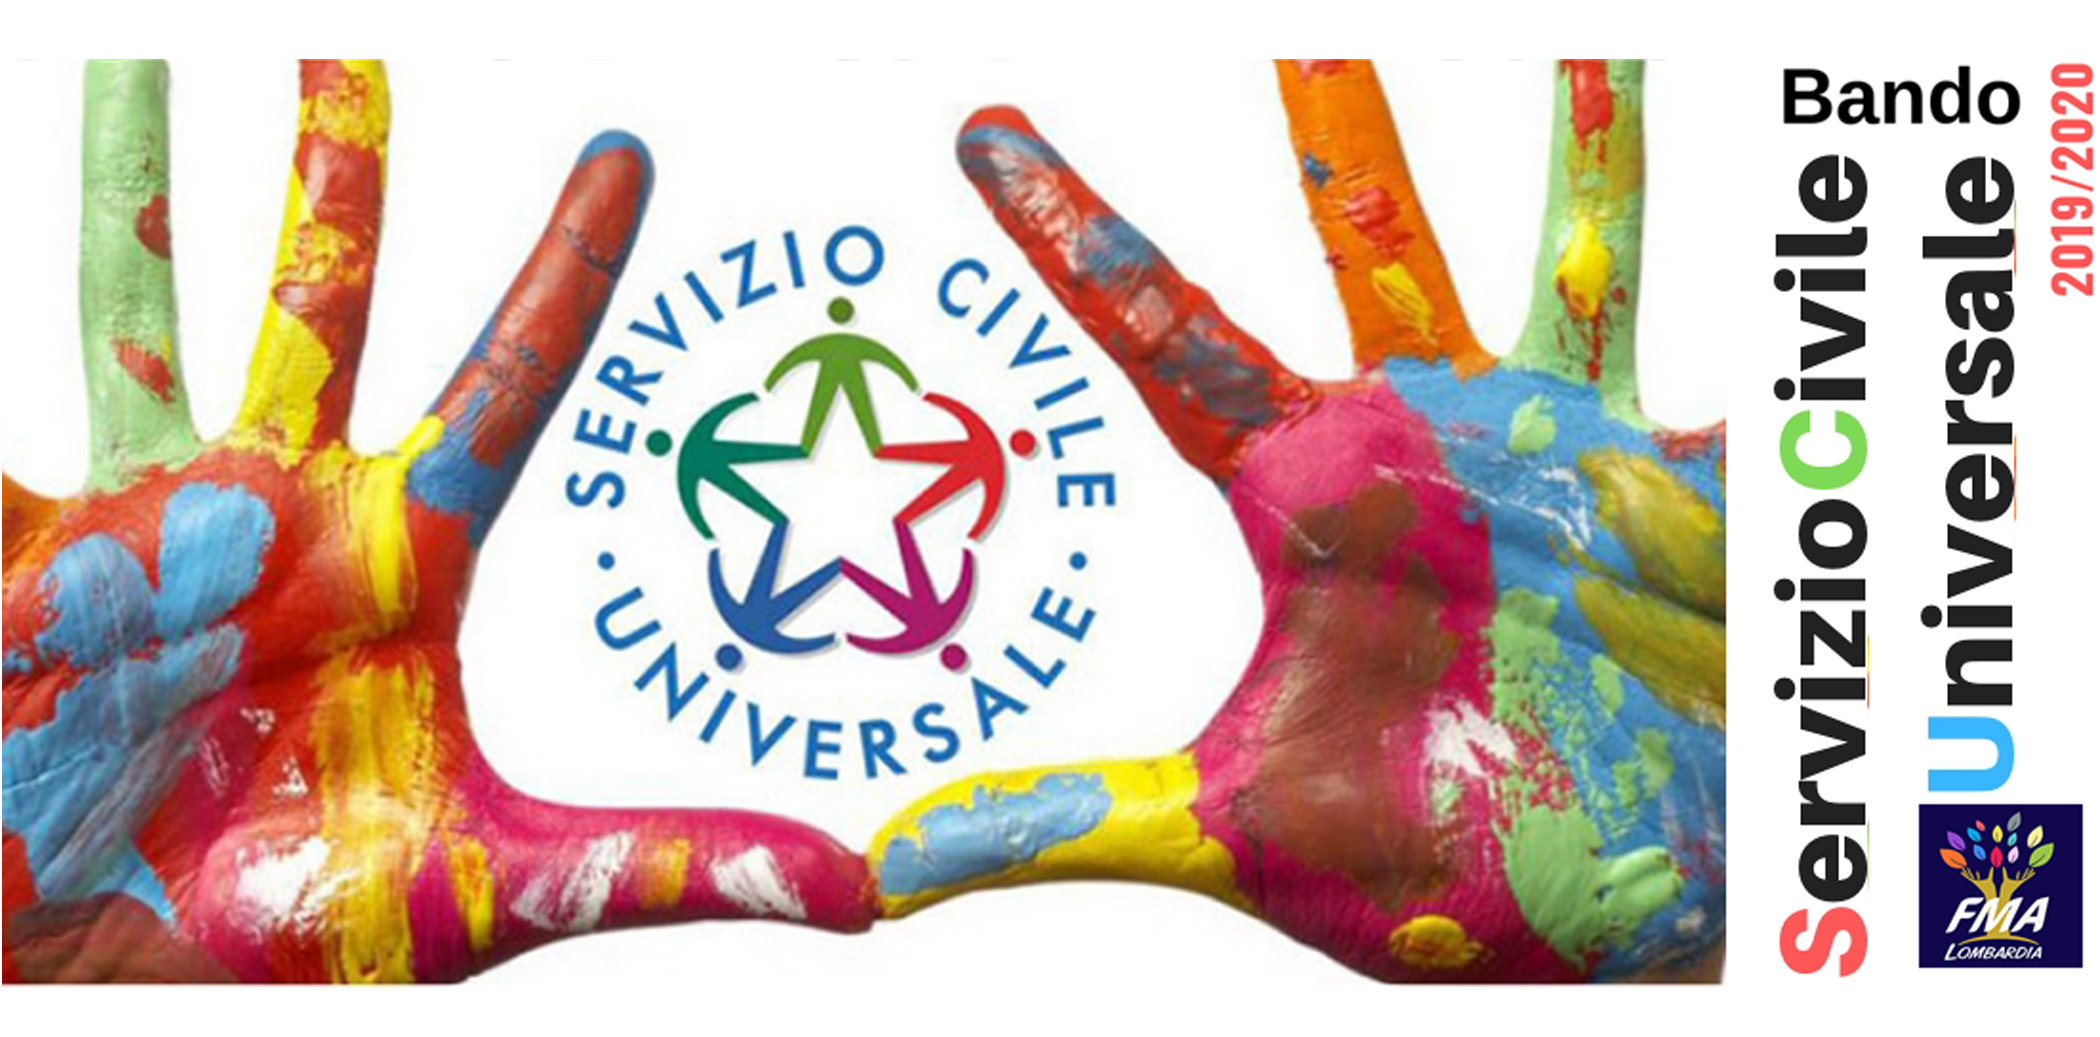 Bando Servizio Civile 2019-2020